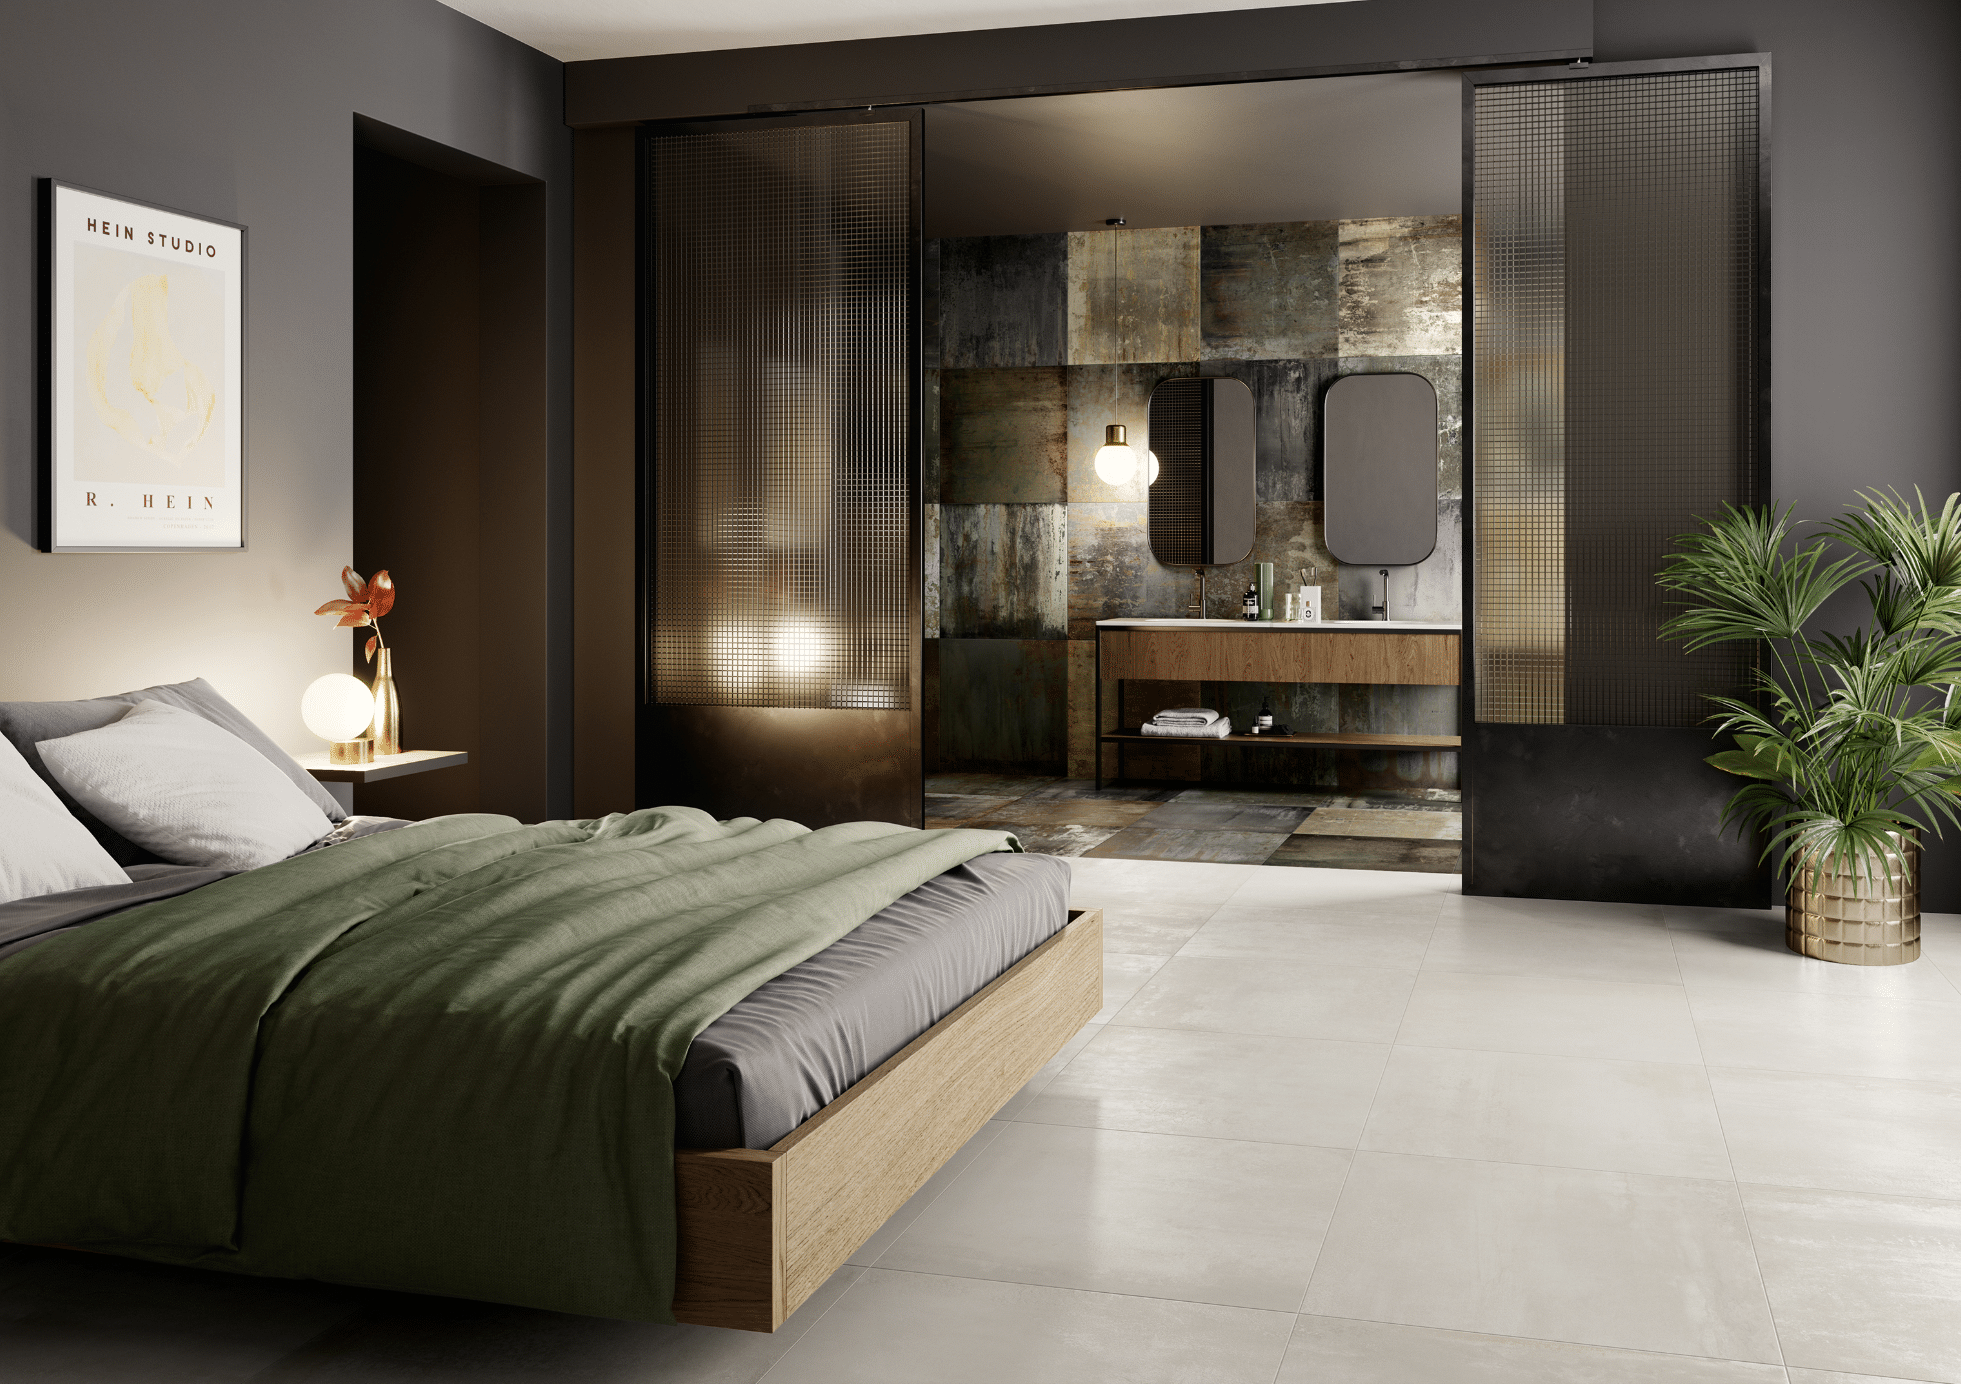 C. Bergmann zeigt ein Schlafzimmer mit hellem Fliesenboden, einem Bett aus Holz und dunklem Bezug mit Zugang zu einem Badezimmer mit Spiegeln von Monocibec.